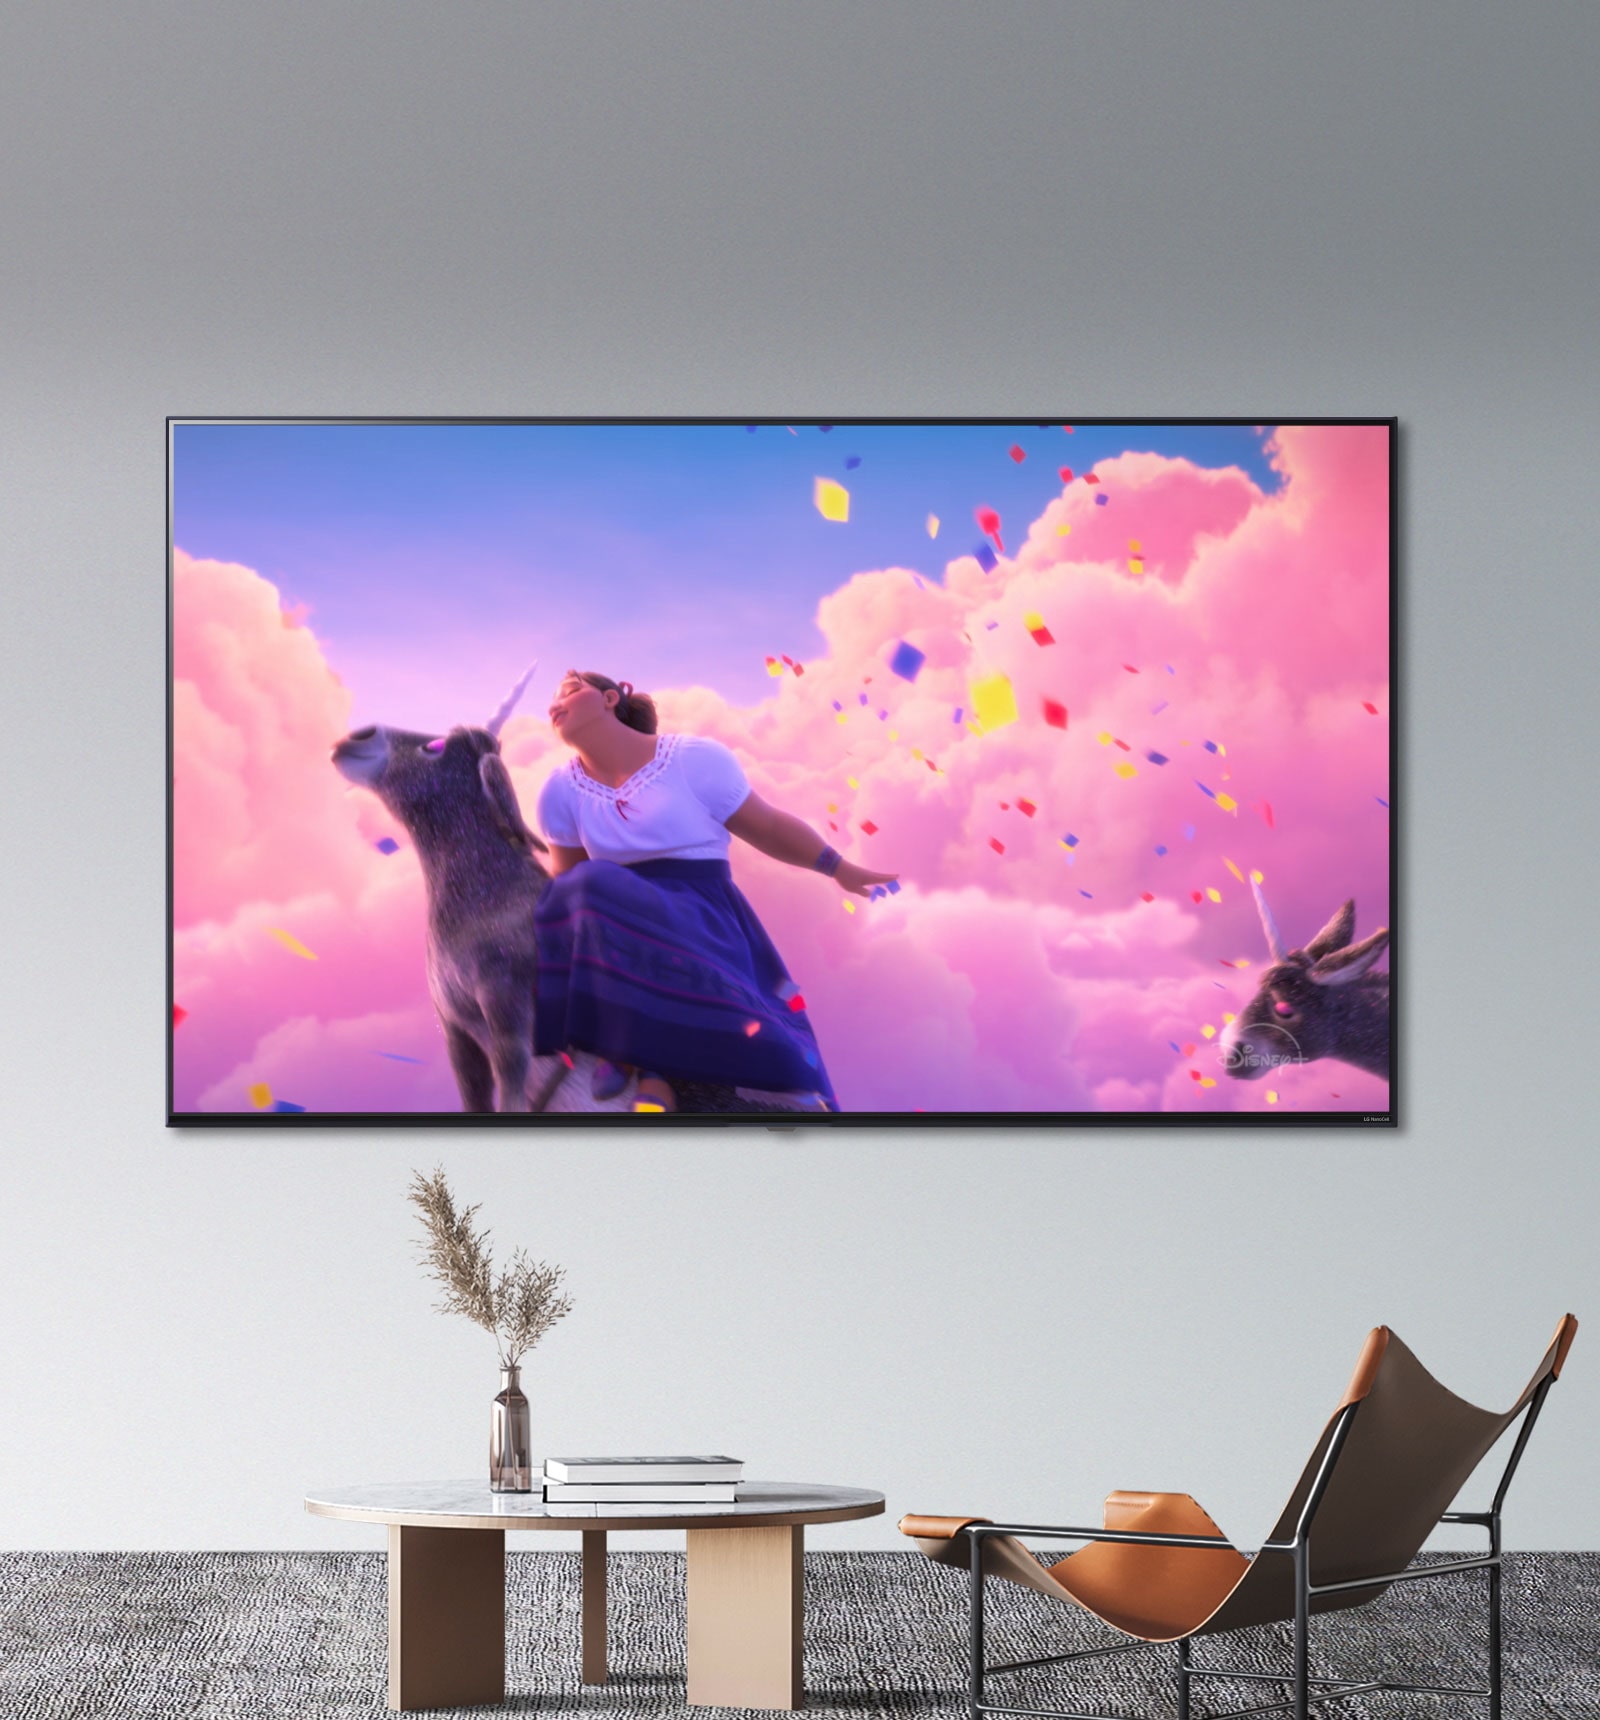 Сцени з анімаційного фільму Діснея «Енканто» відображаються у яскравих, живих кольорах на телевізорі LG NanoCell.